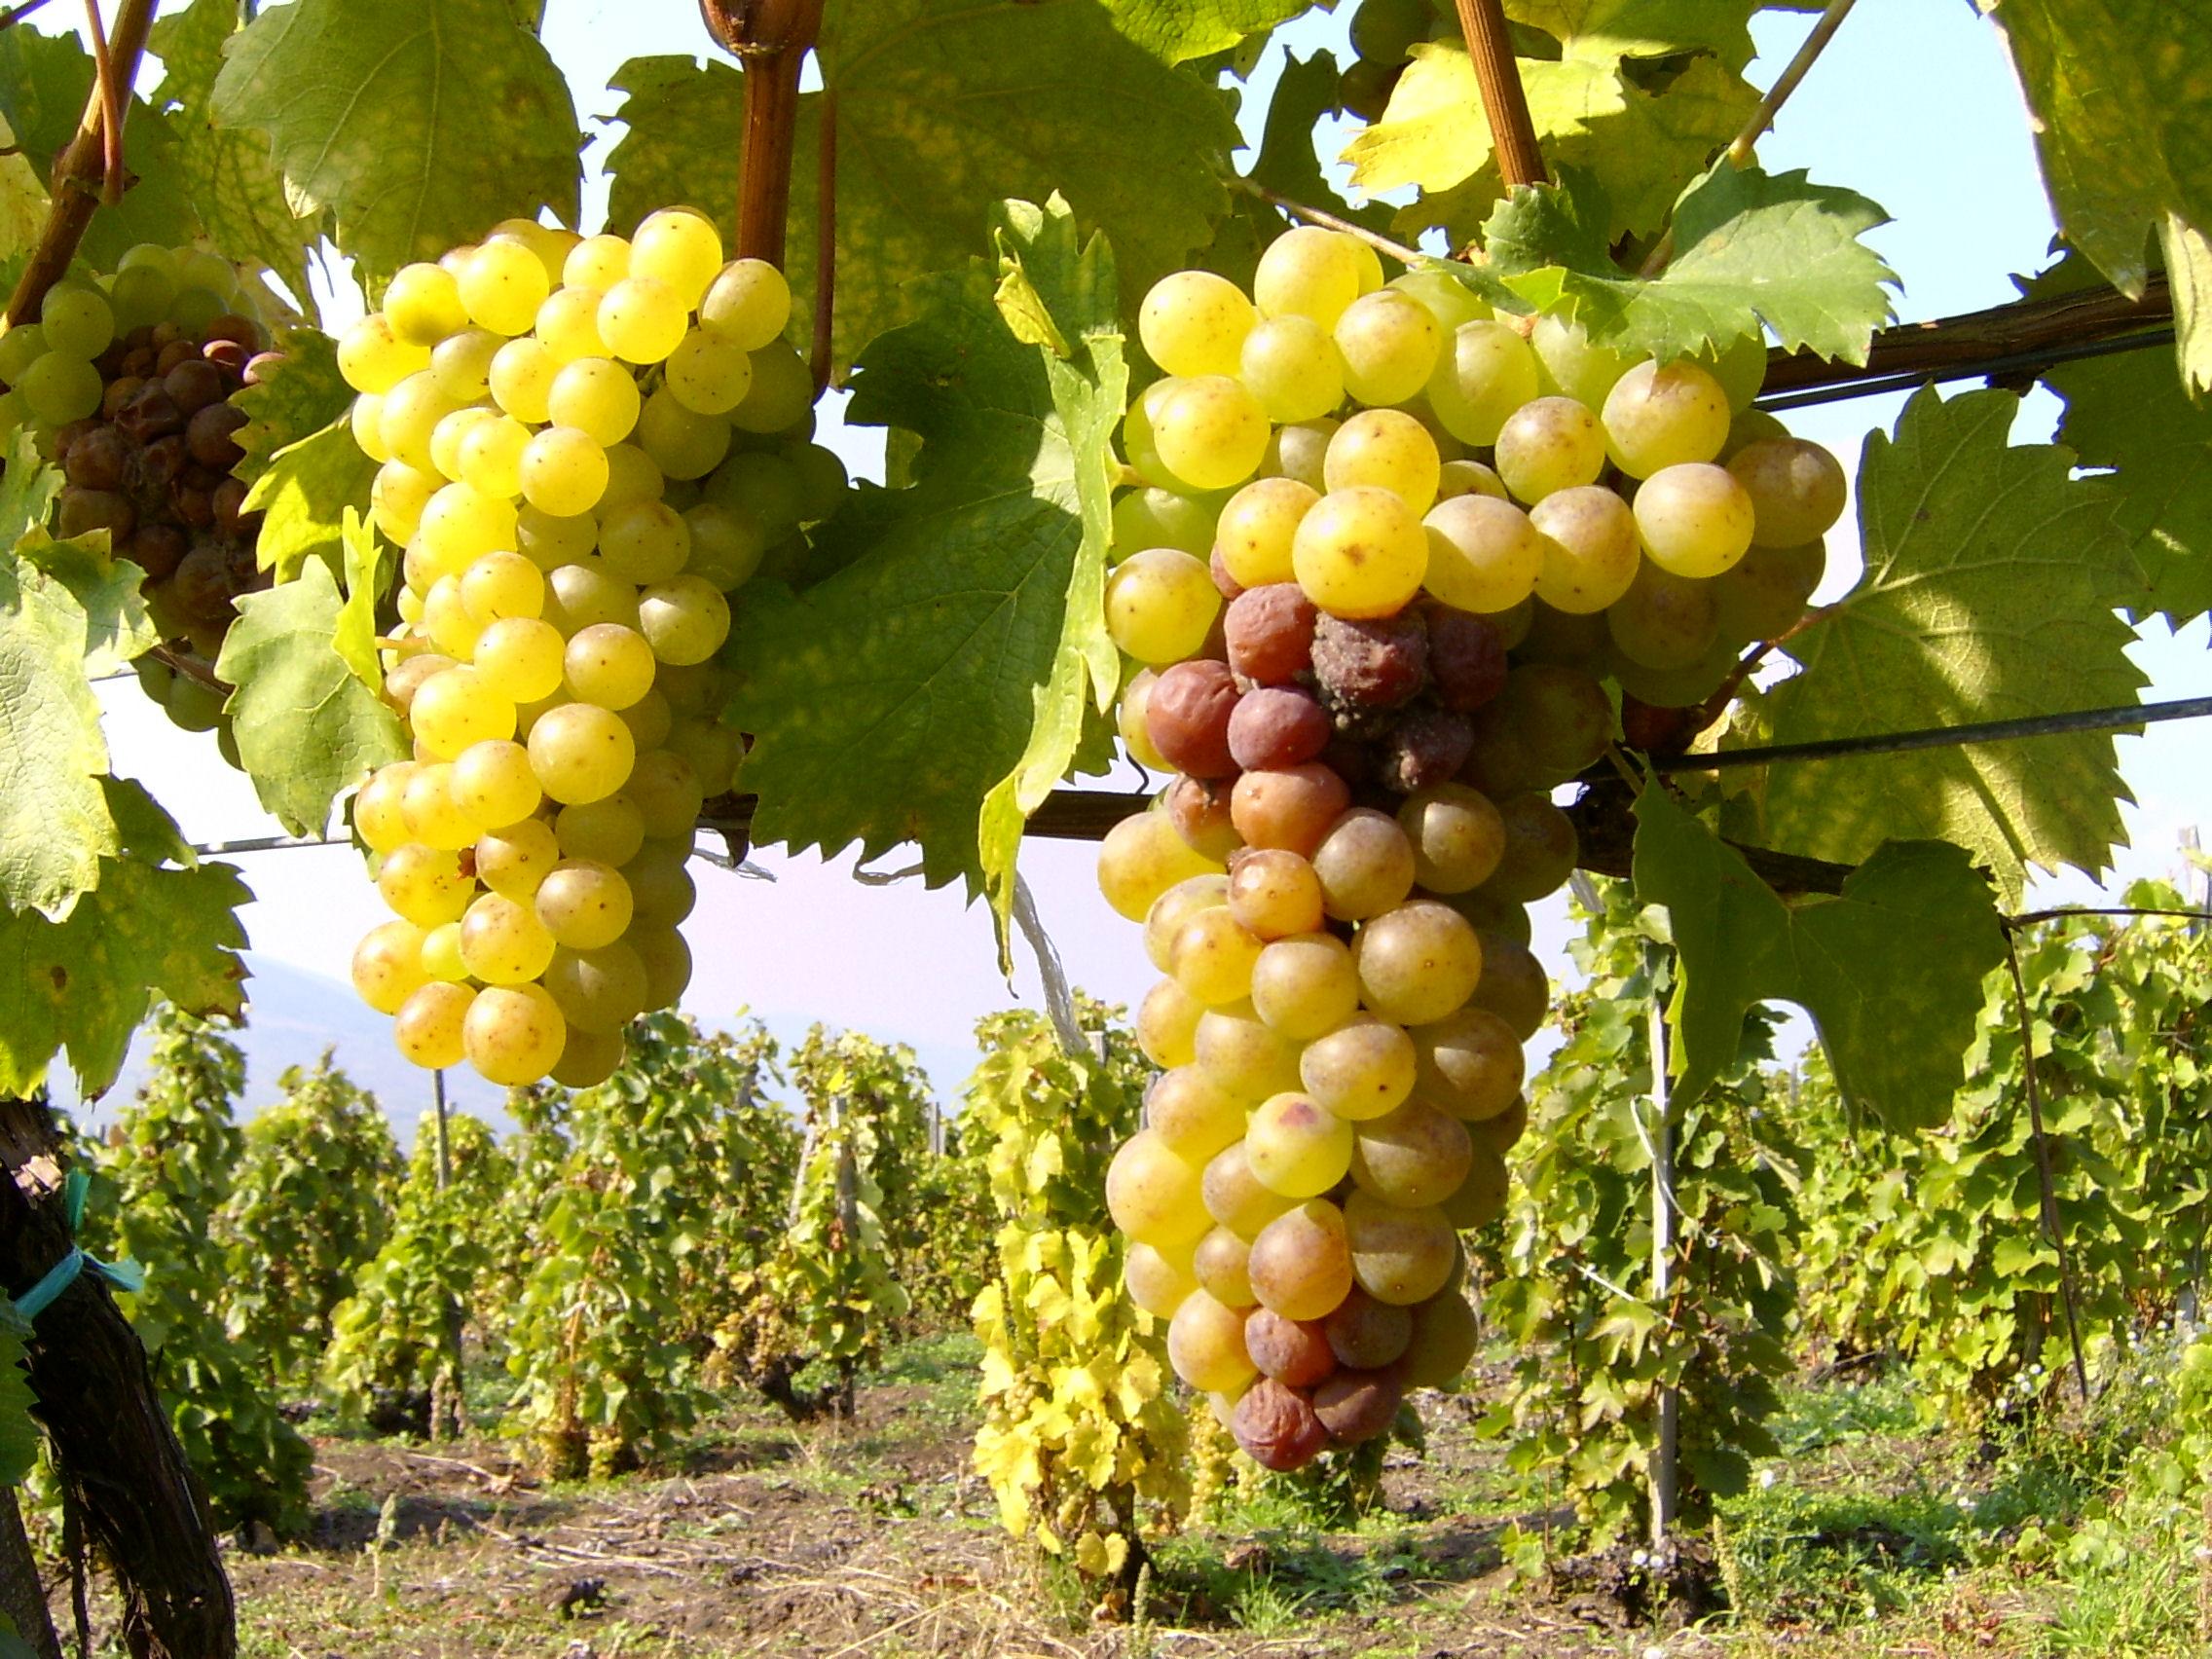 Pannon Tokaj Winery Ltd